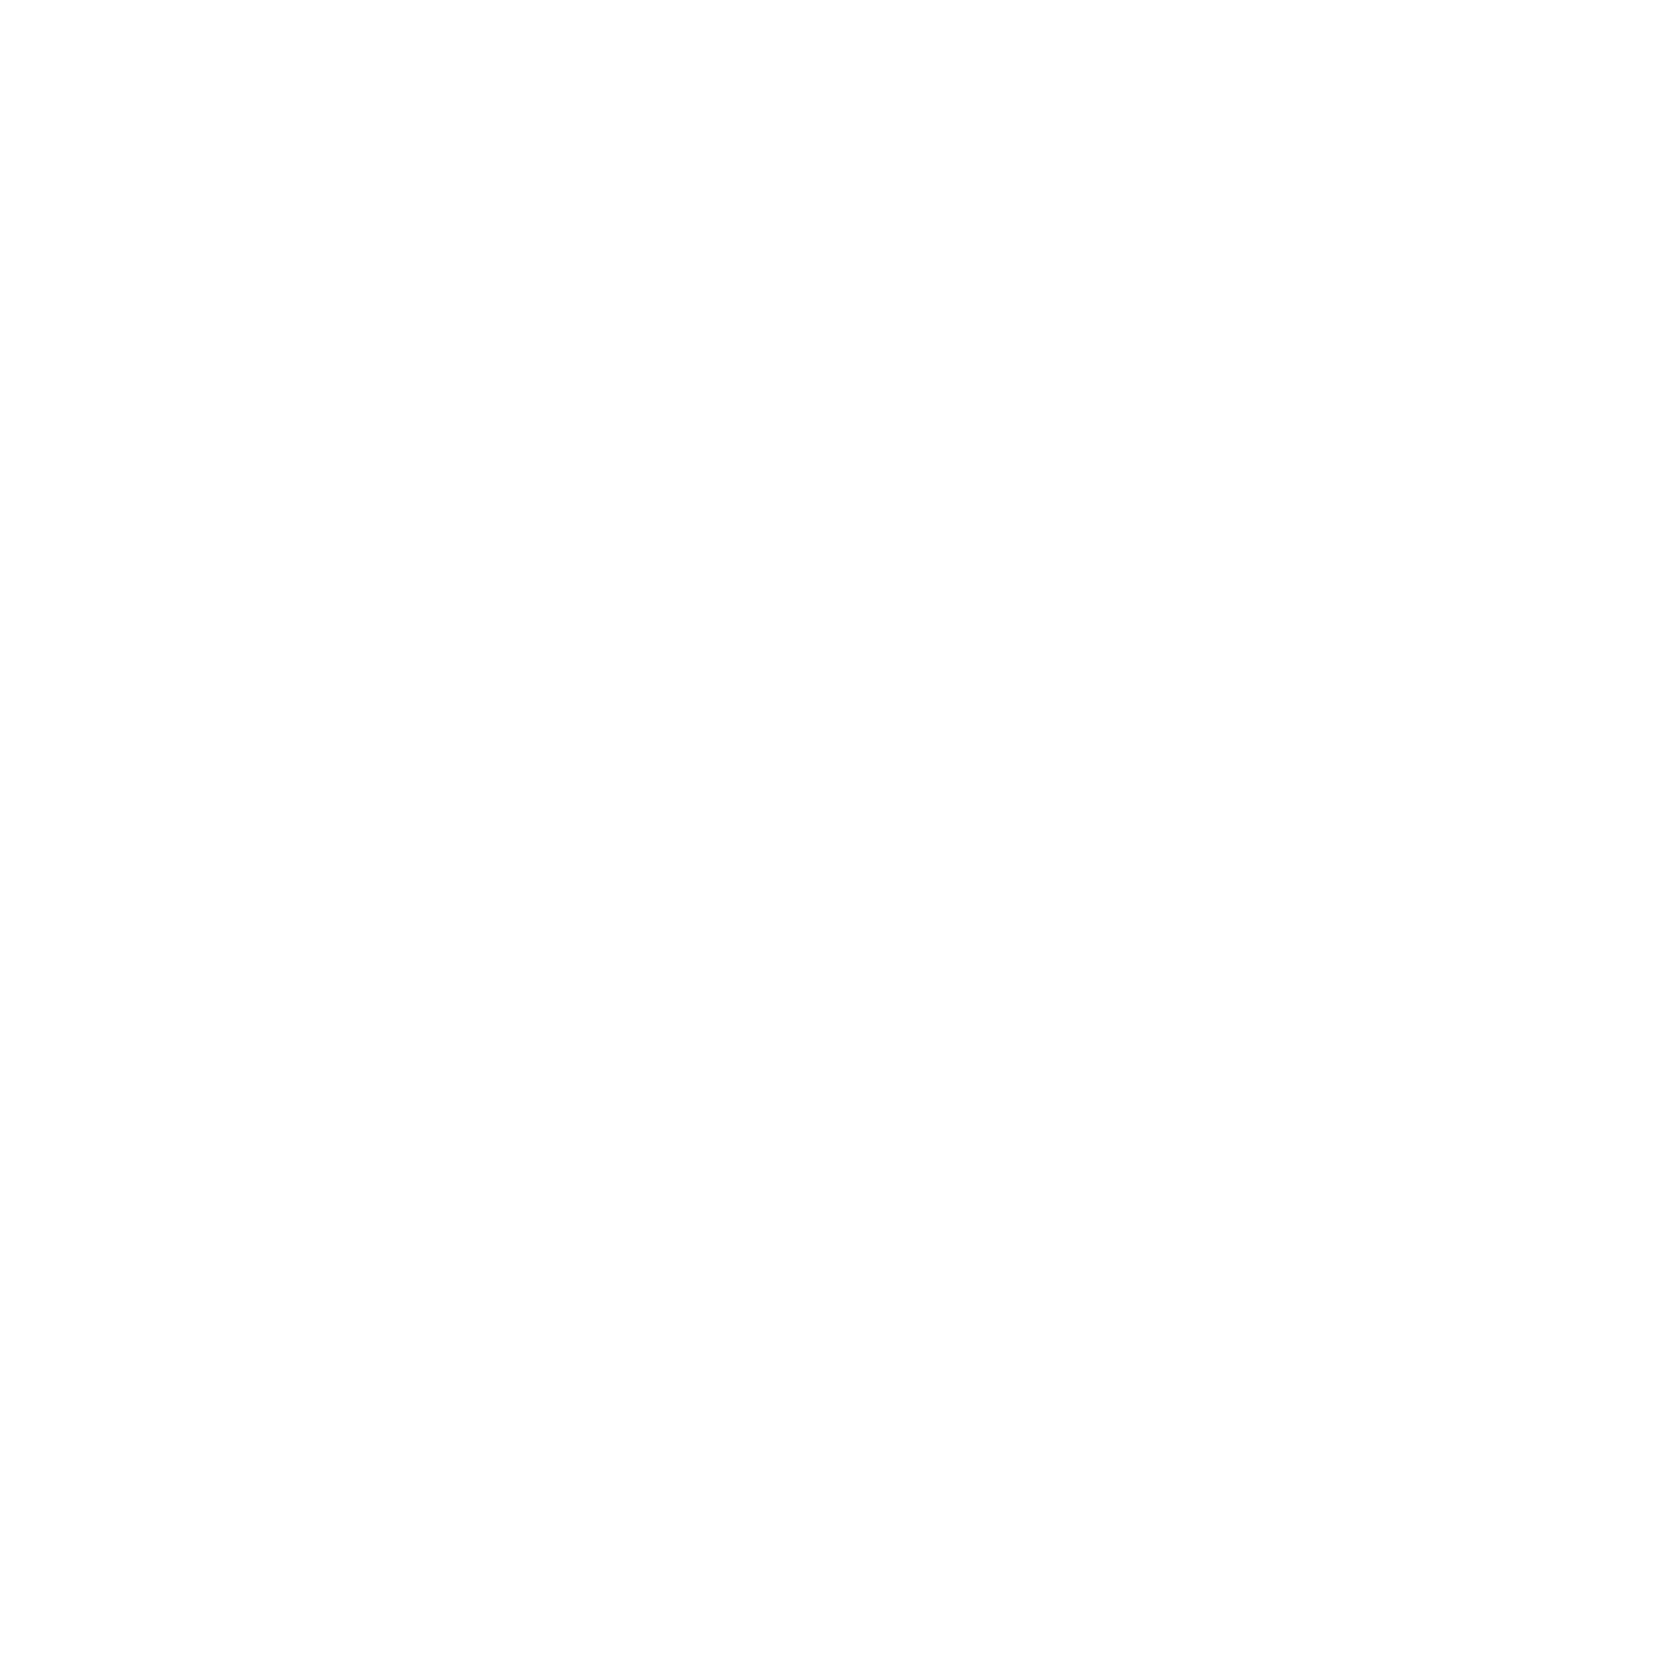 Чистокровная ахалтекинская лошадь кобыла Масзара Шаэль, ахалтекинец на фото, Машкова Елена, Elena Mashkova, фотограф